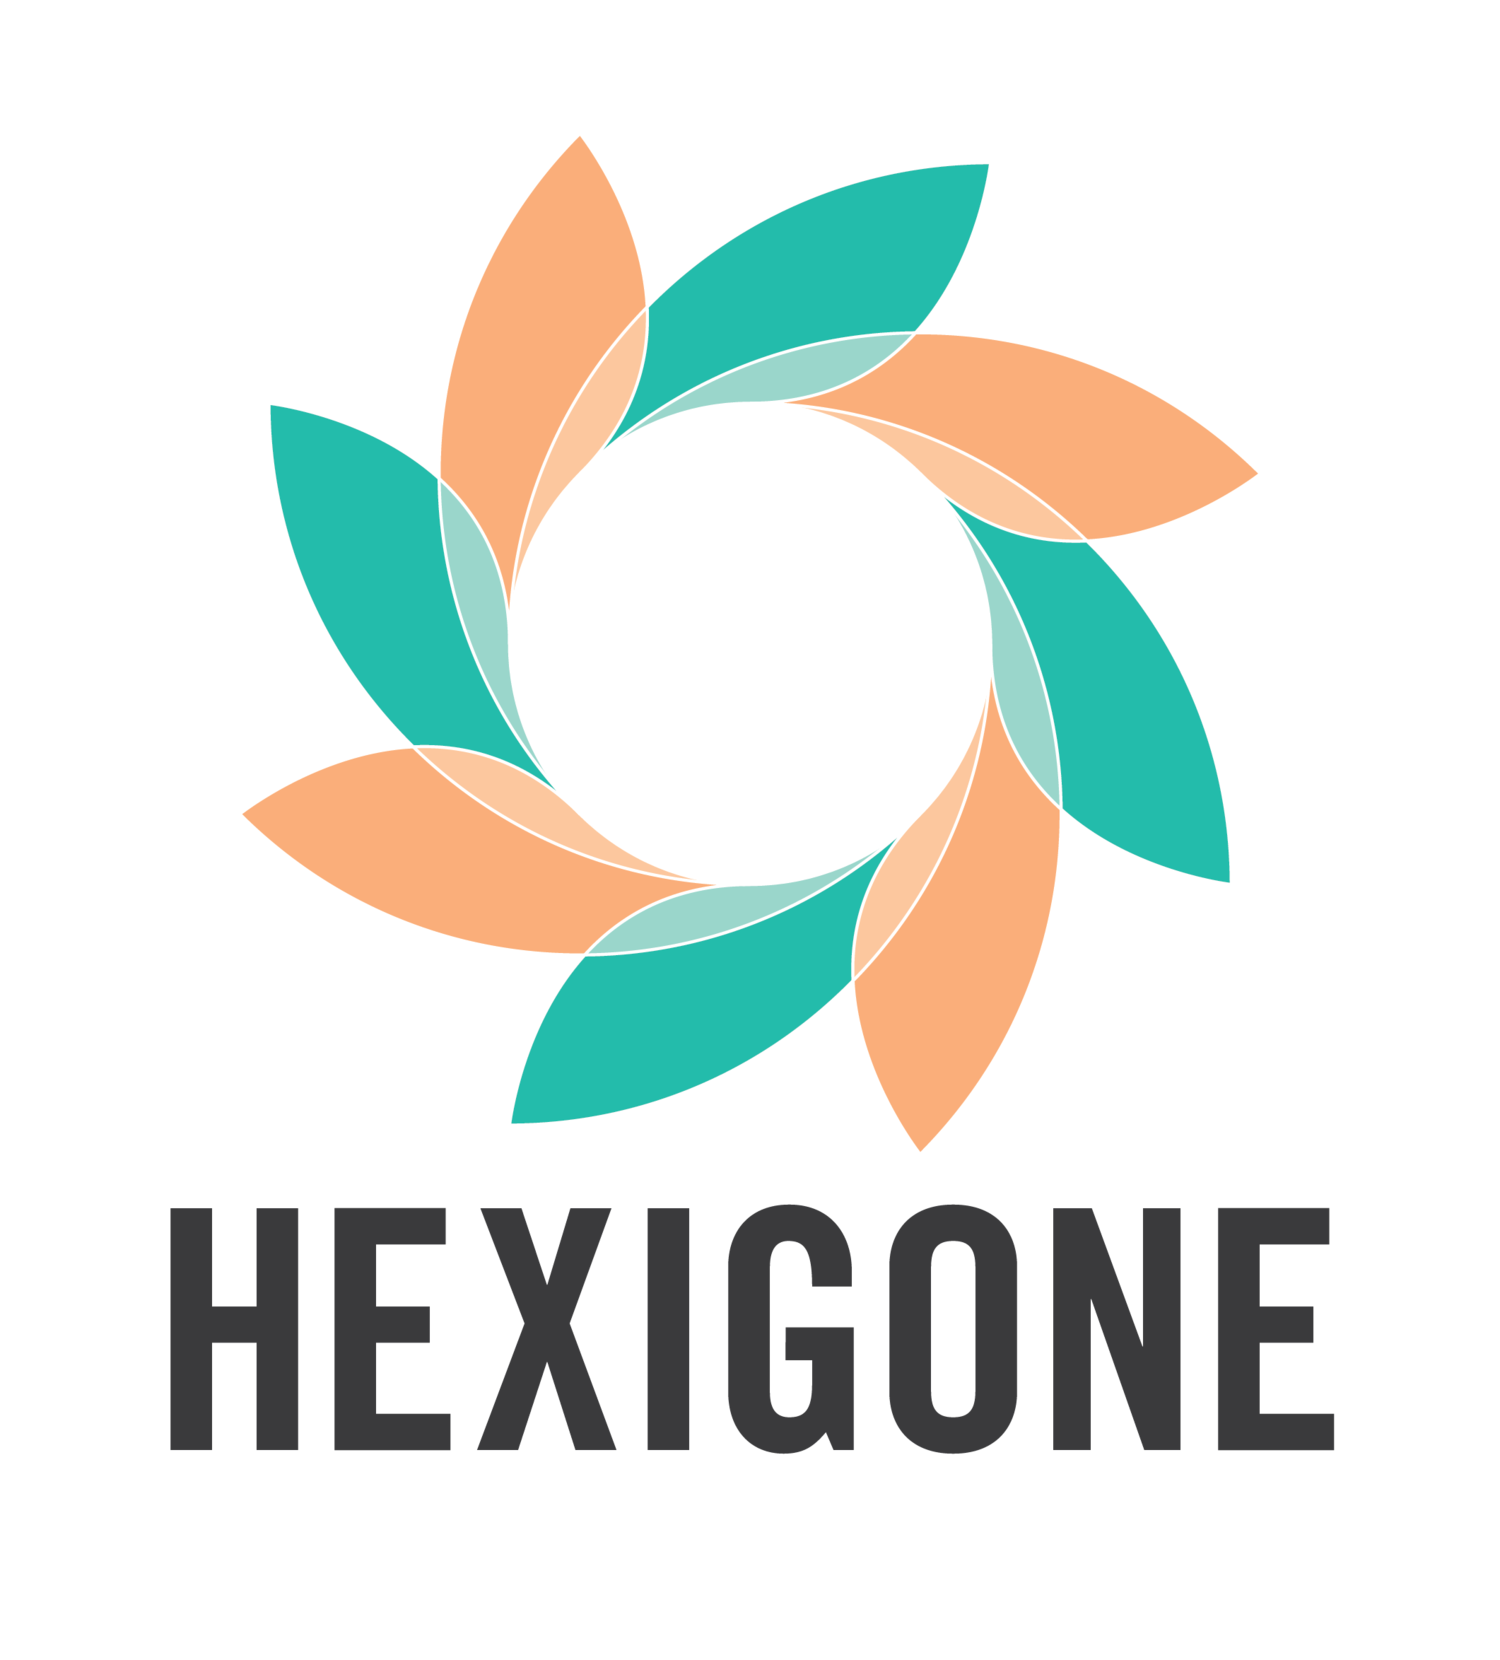 Hexigone